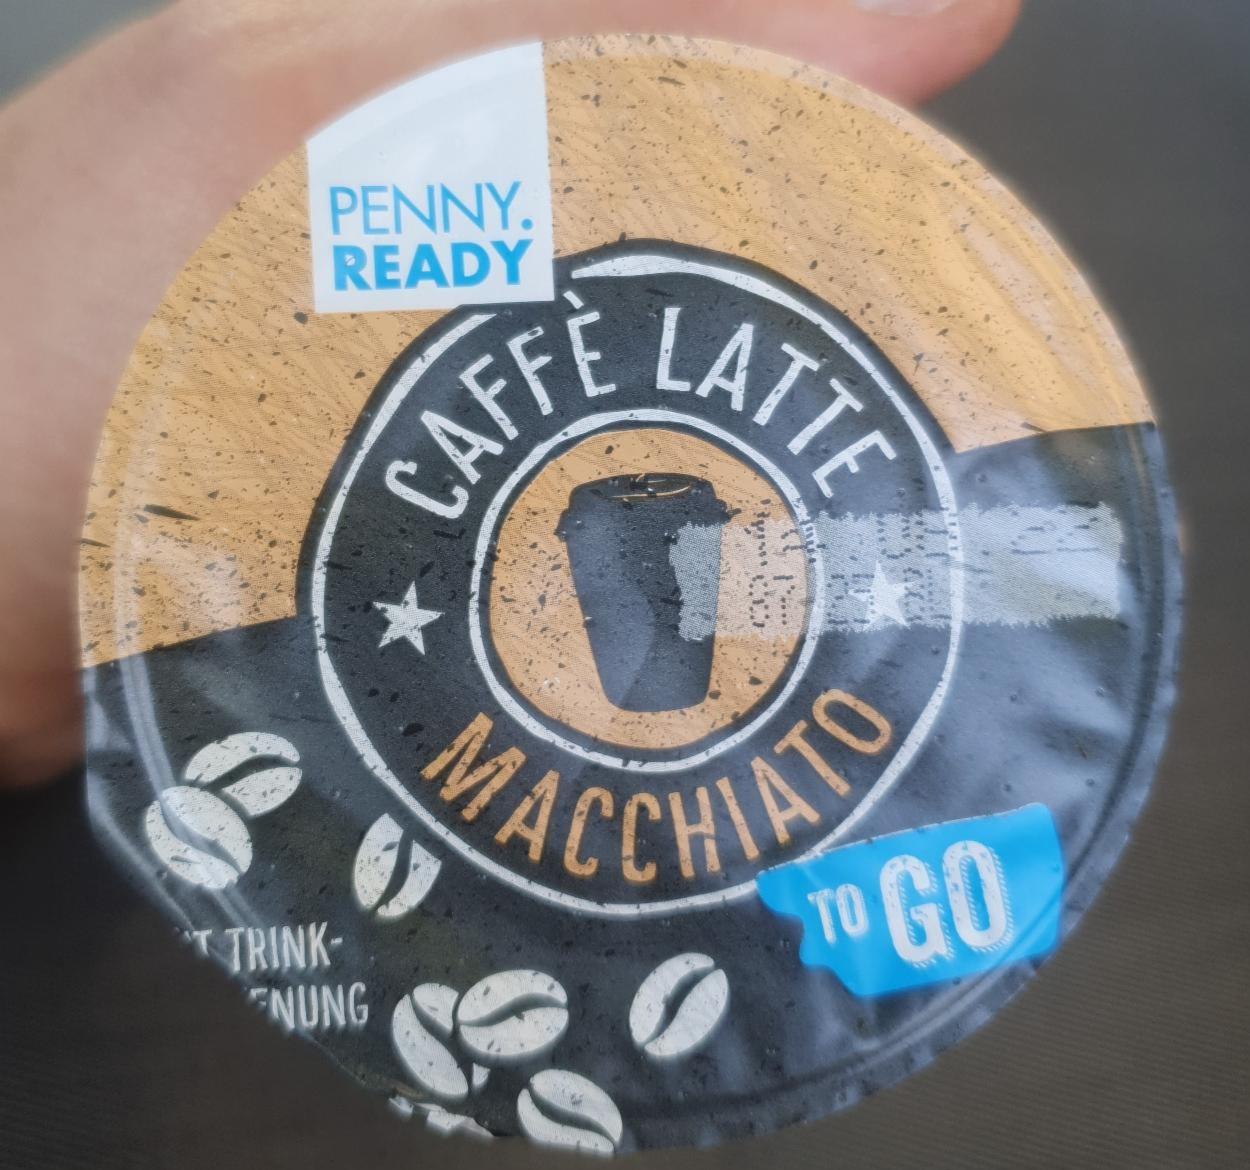 Fotografie - Caffe latte Macchiato to go Penny Ready